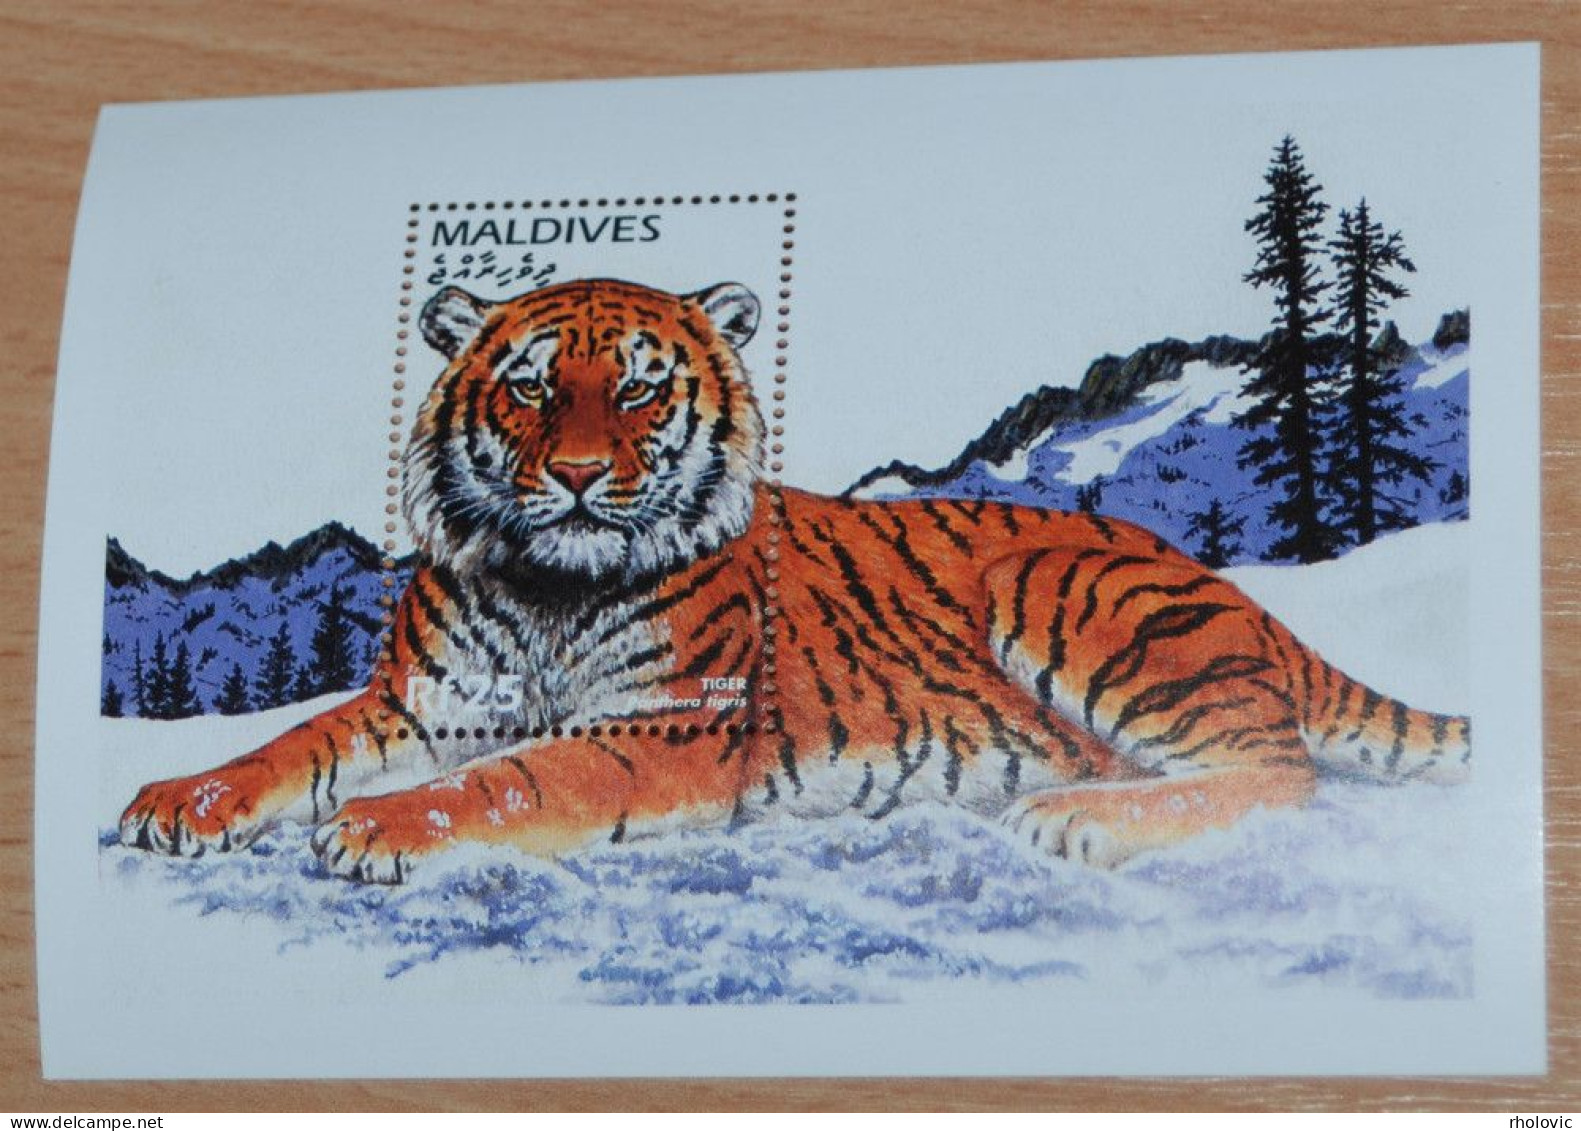 MALDIVES 1996, Endangered Species, Tiger, Animals, Fauna, Mi #B372, Souvenir Sheet, MNH** - Big Cats (cats Of Prey)